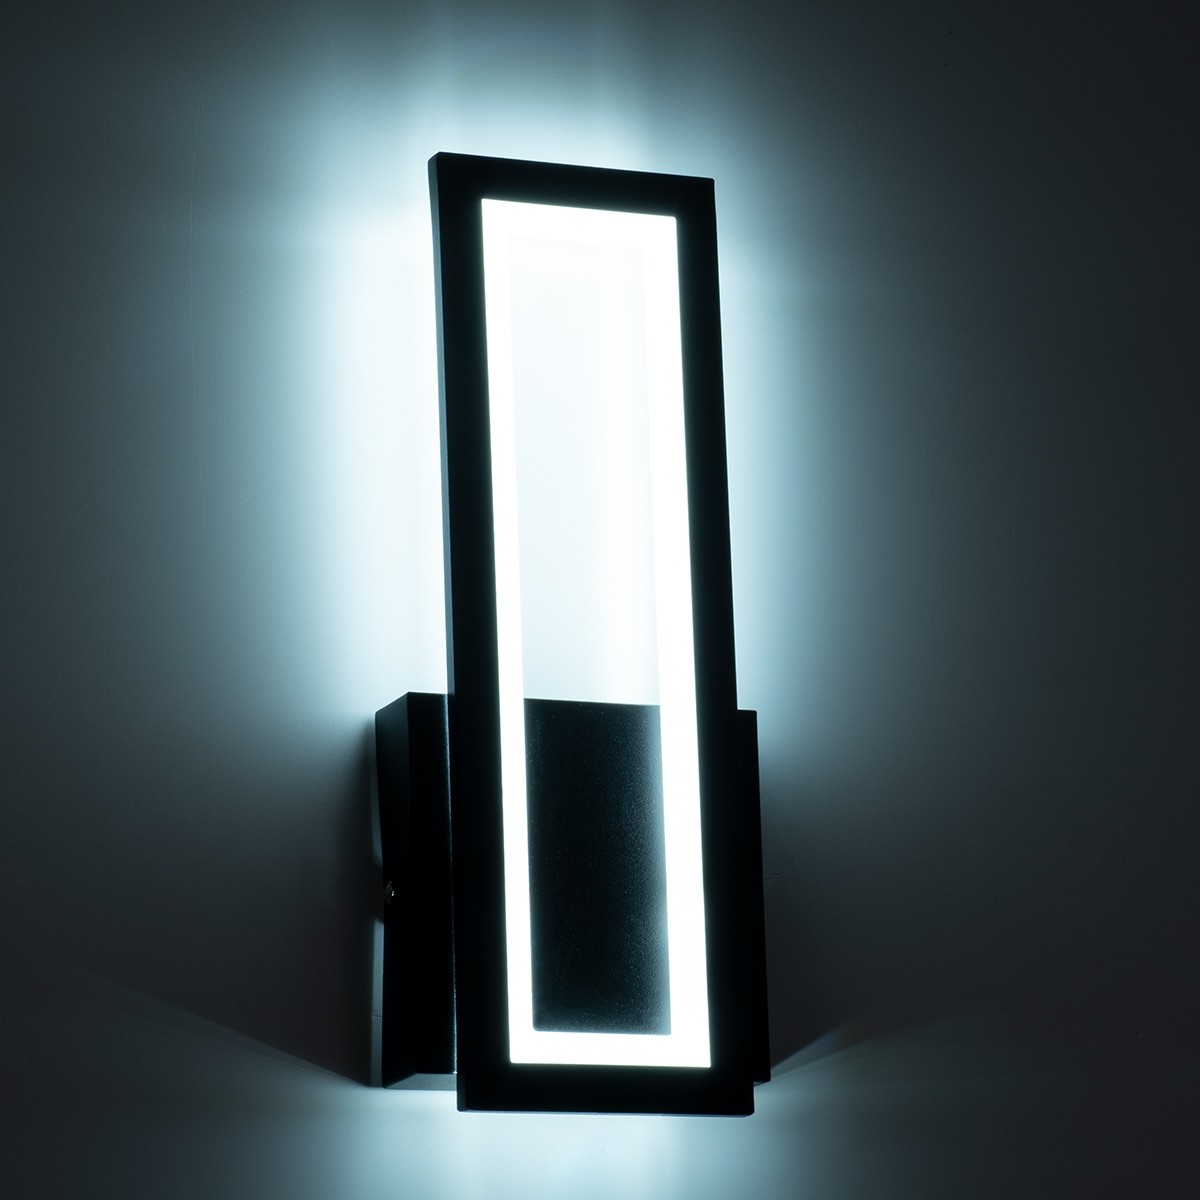 LED Φωτιστικό Τοίχου - Απλίκα Μαύρη TIARA 12W με Εναλλαγή Φωτισμού μέσω Διακόπτη On/Off Μ12.5 x Π4 x Υ32cm 61327